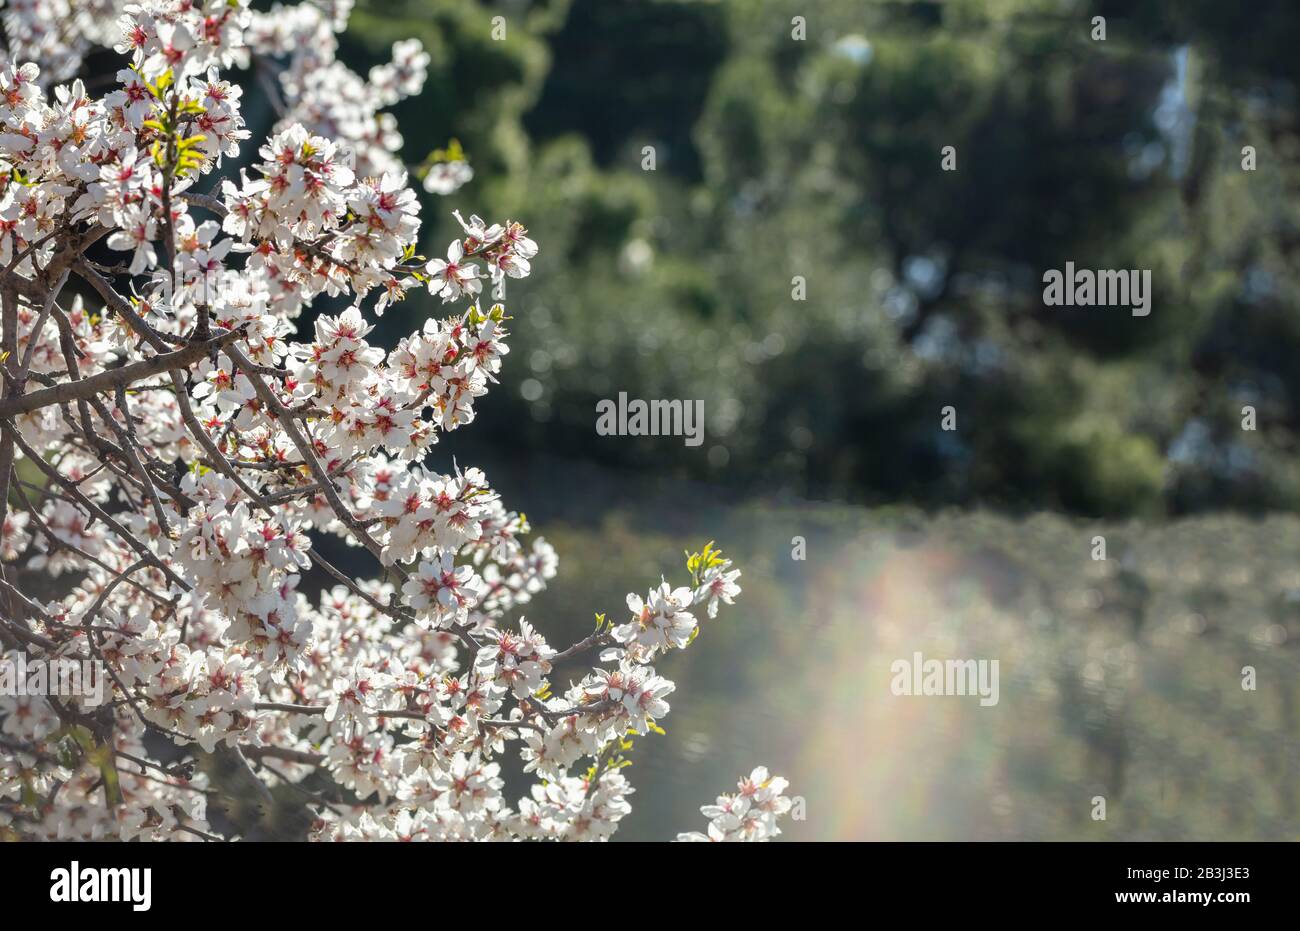 Primavera de almendros floreciendo. Rama de almendros con flores blancas rosadas contra fondo verde borroso de la naturaleza, espacio de copia Foto de stock